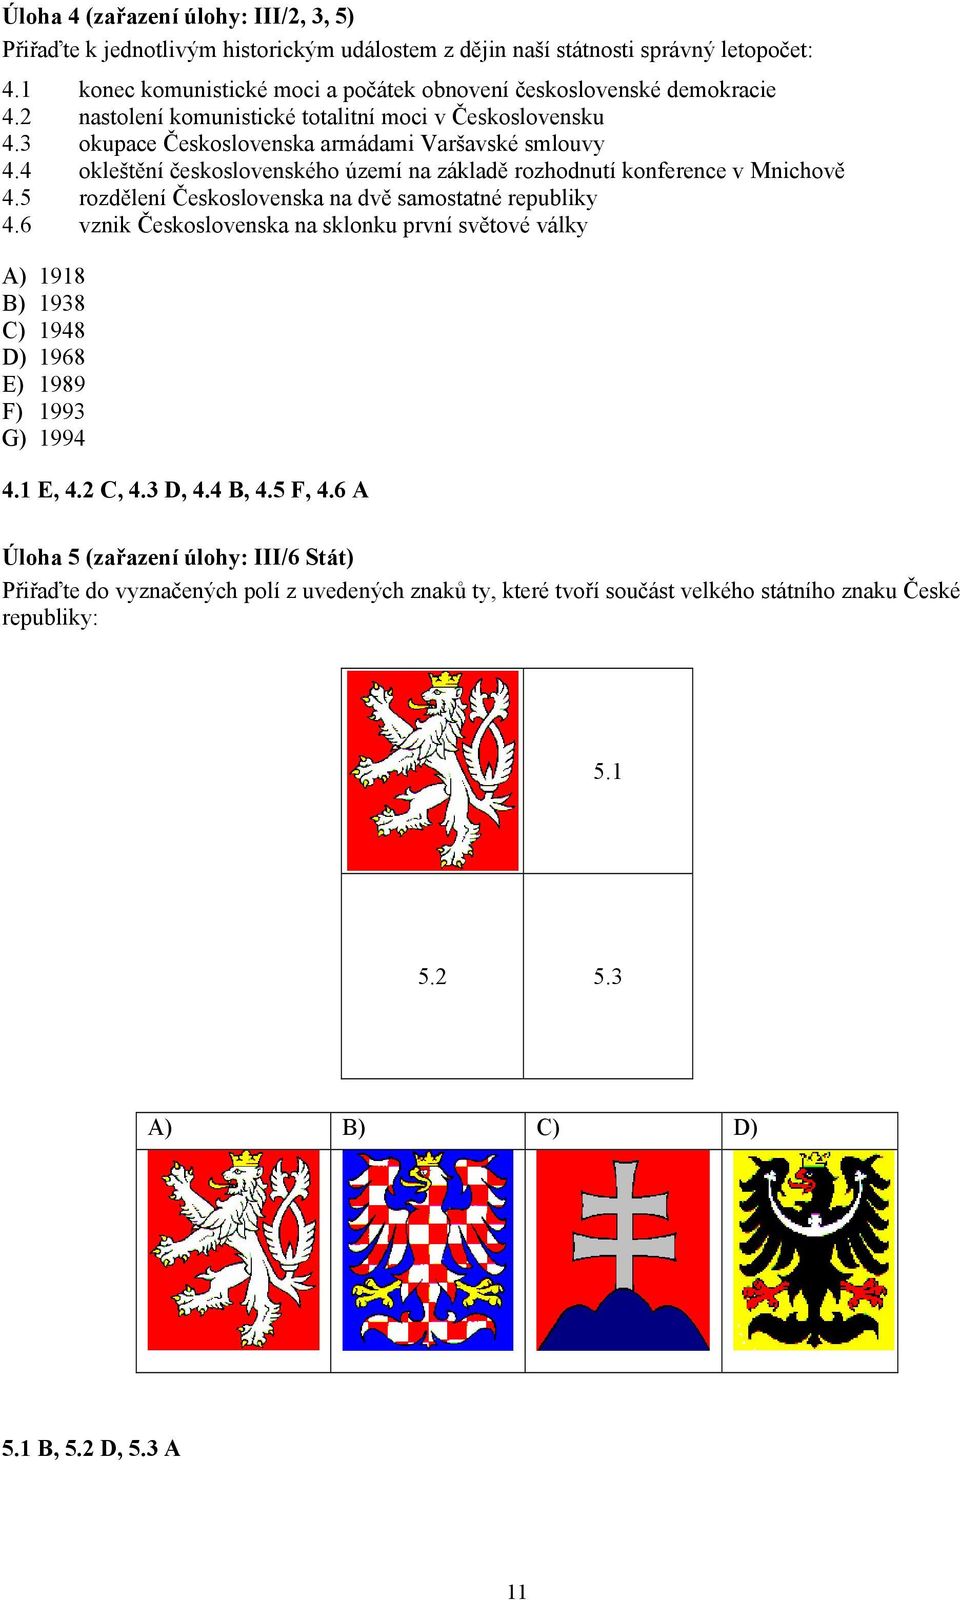 4 okleštění československého území na základě rozhodnutí konference v Mnichově 4.5 rozdělení Československa na dvě samostatné republiky 4.